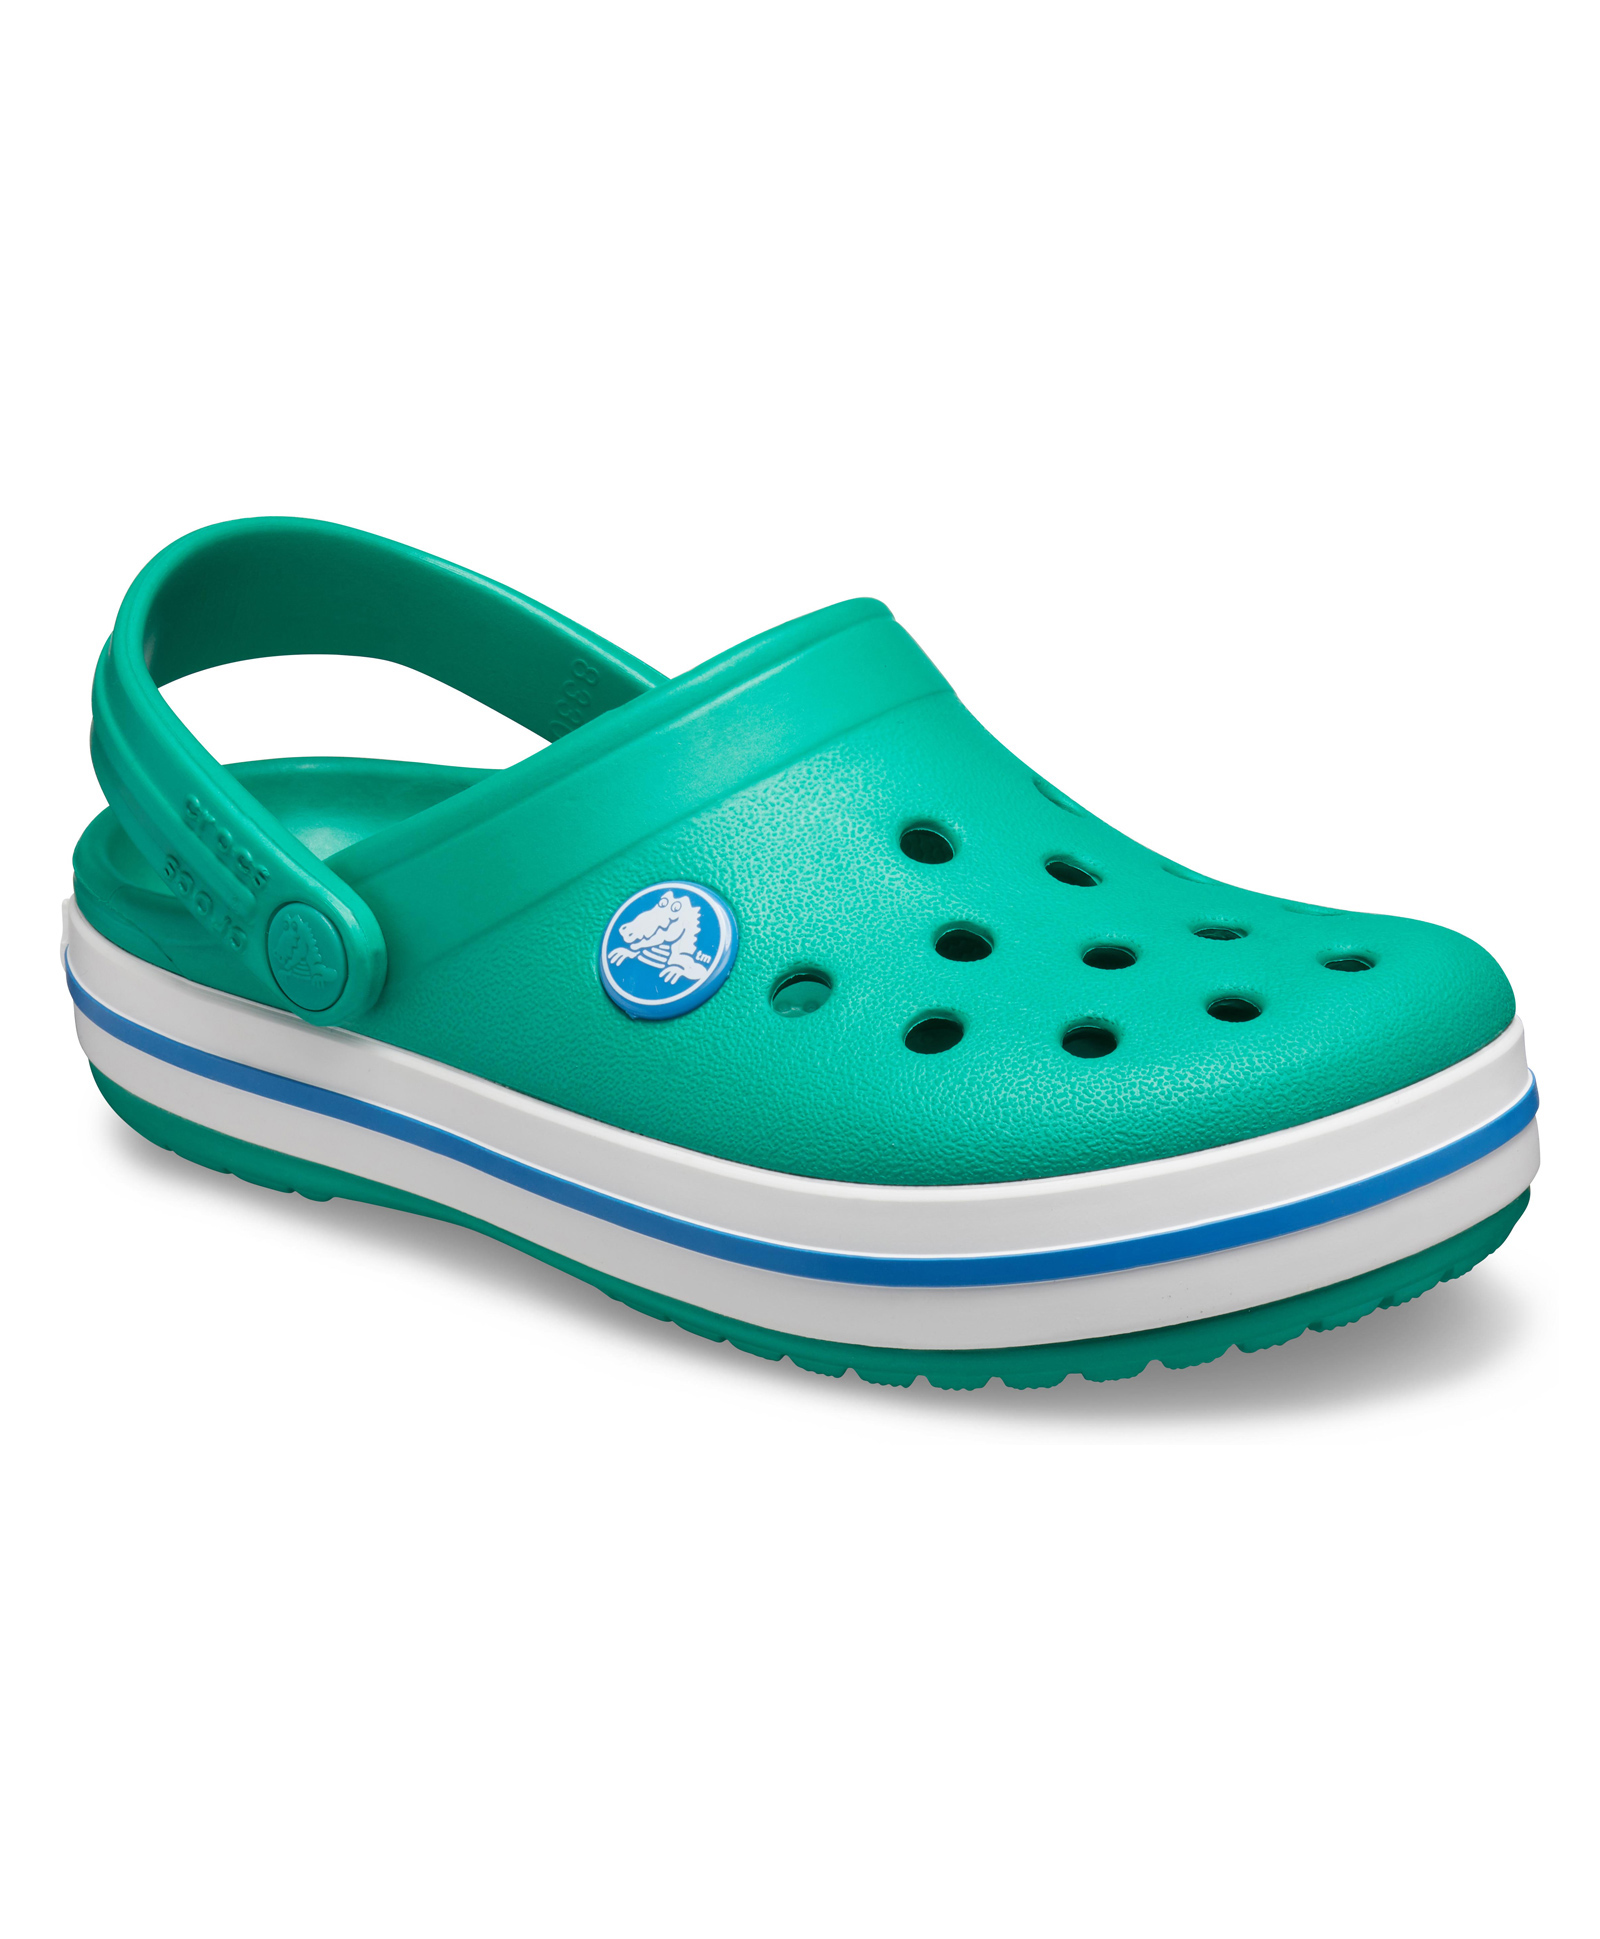 Crocs Crocband Clog K - Deep Green Prep Blue Online in UAE, Buy at Best ...